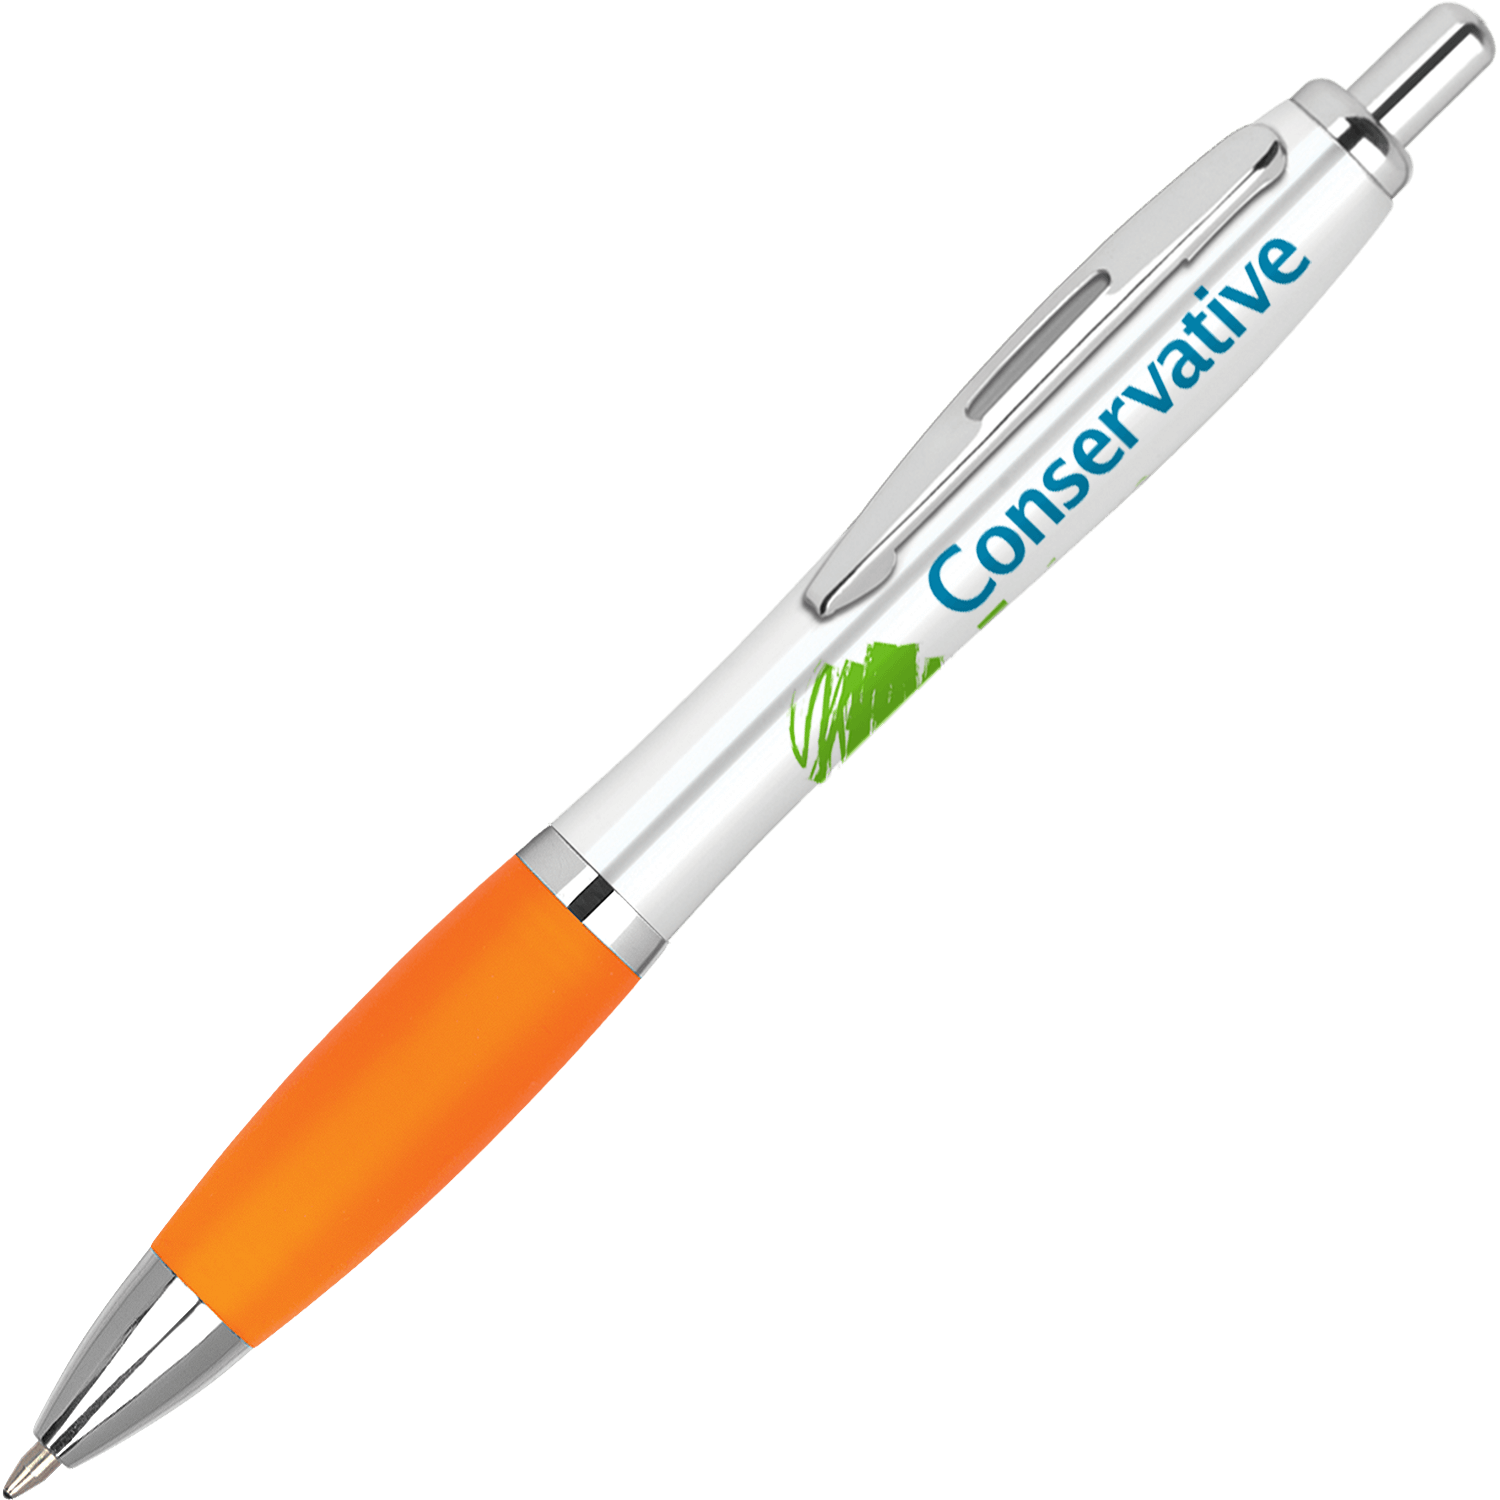 Promotional pencils printed pens. Clipart pen colour pen